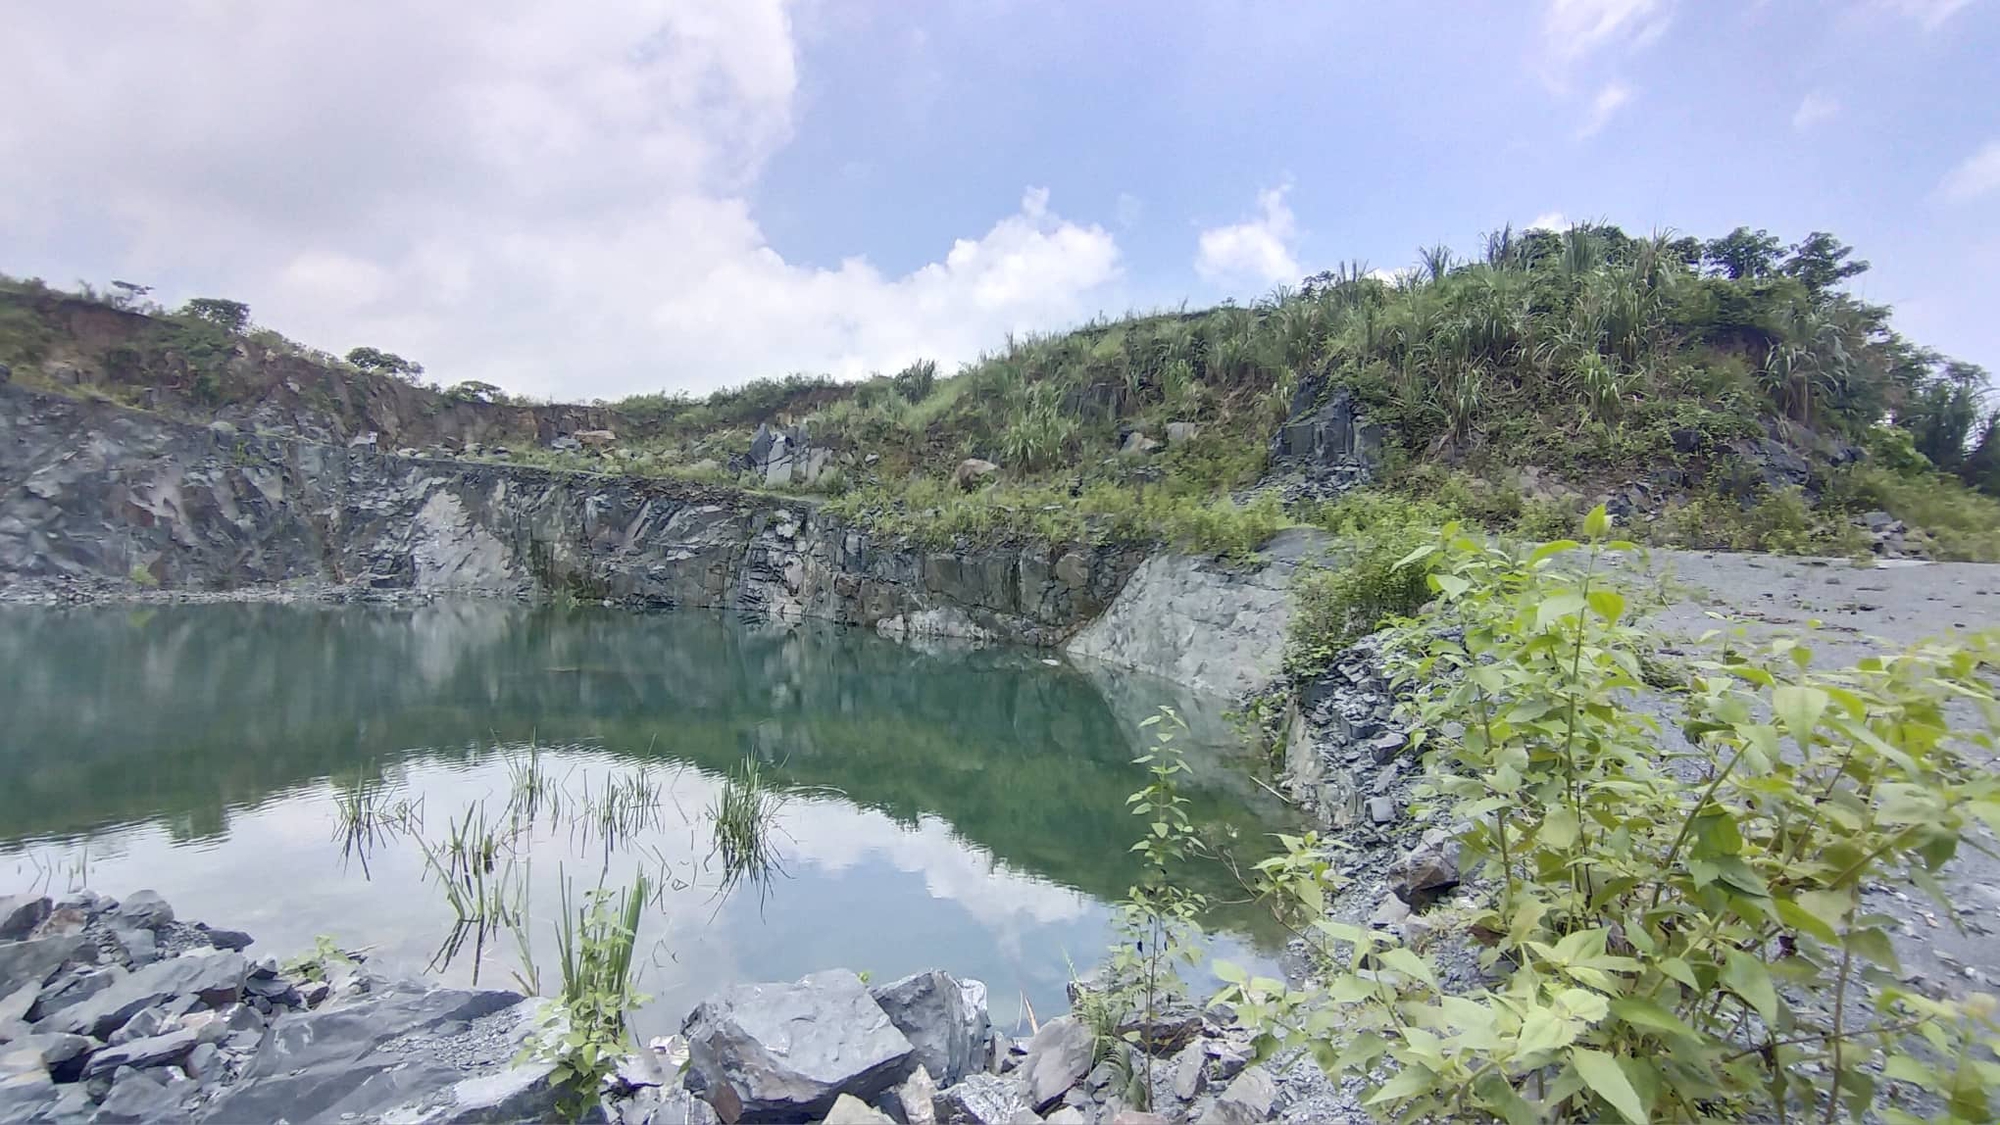 Hậu khai thác khoáng sản ở Hà Nội: Sẽ cưỡng chế việc đóng cửa mỏ và hoàn nguyên môi trường - Ảnh 3.